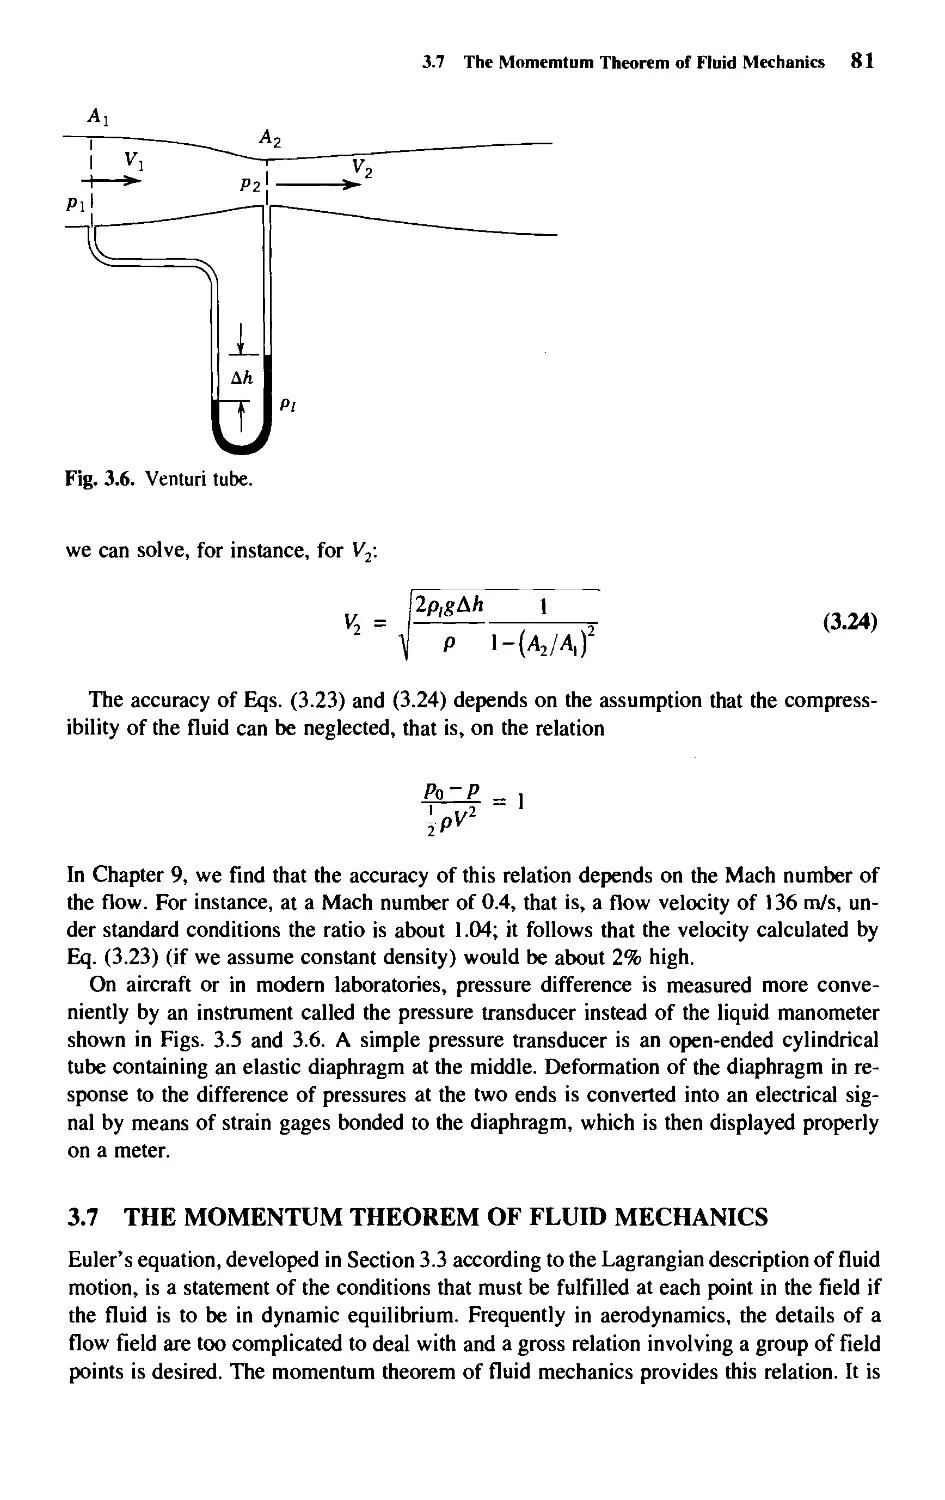 3.7 - The Momentum Theorem of Fluid Mechanics